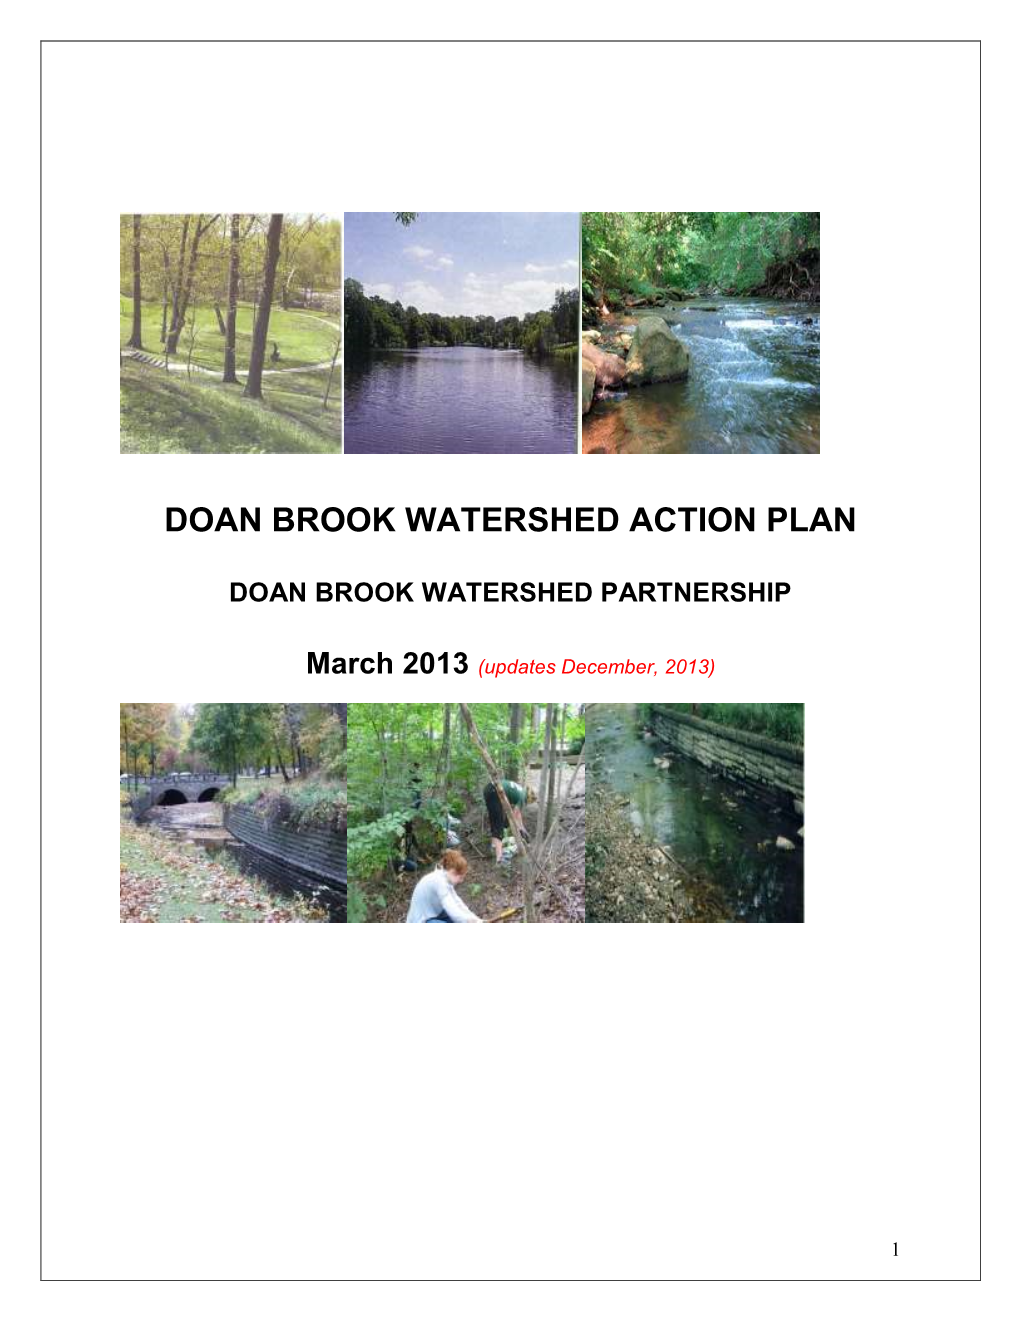 Doan Brook Watershed Action Plan